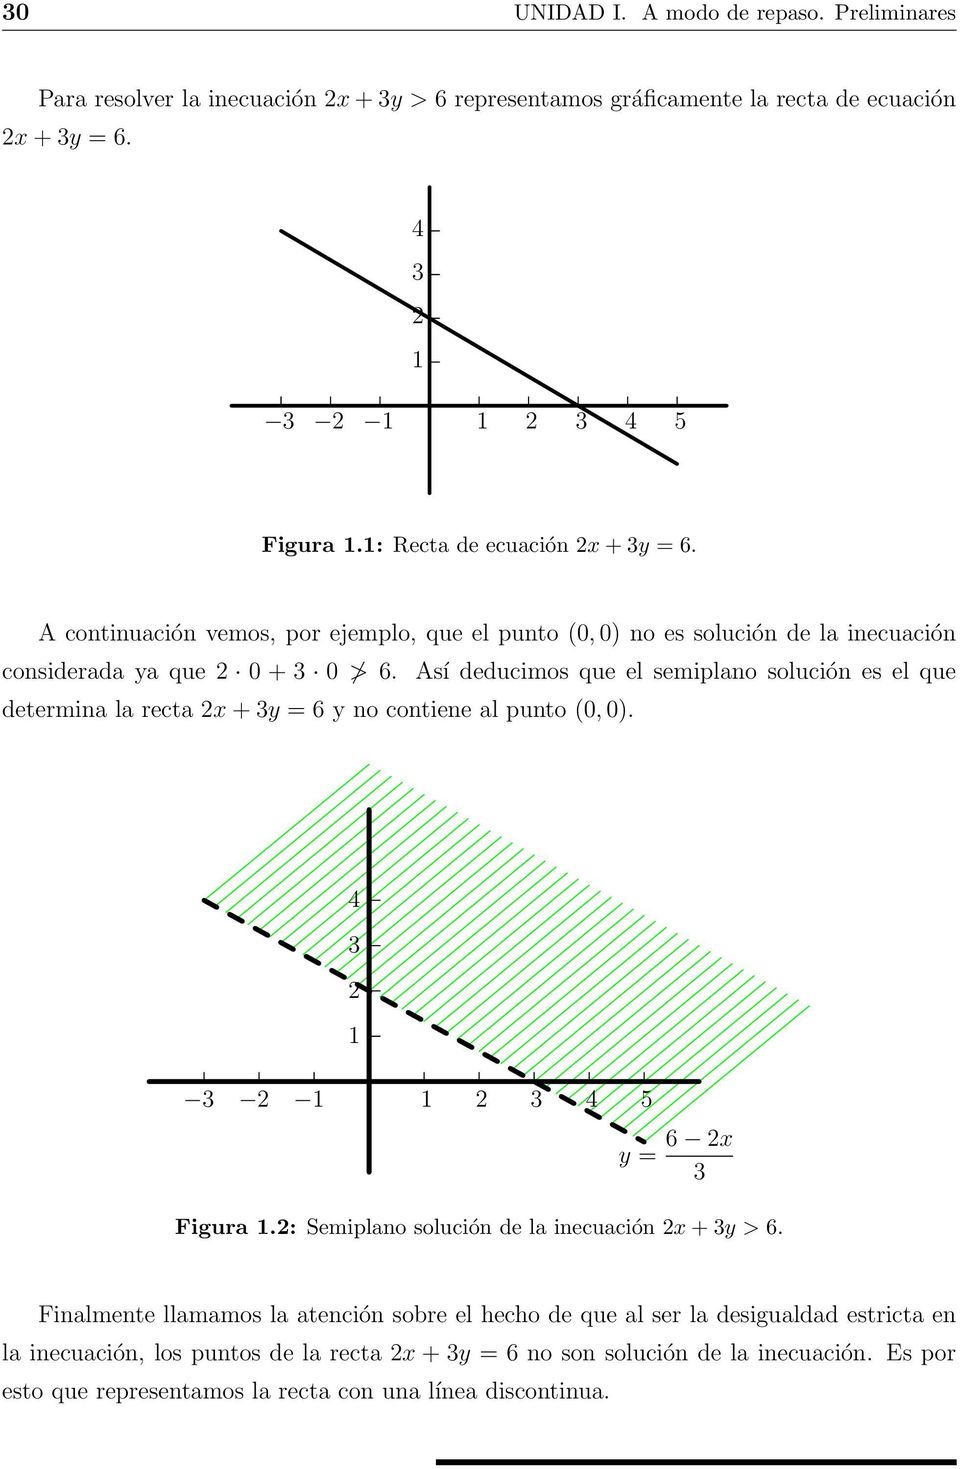 Así deducimos que el semiplano solución es el que determina la recta x + y = 6 y no contiene al punto (0, 0). 5 y = 6 x Figura.: Semiplano solución de la inecuación x + y > 6.